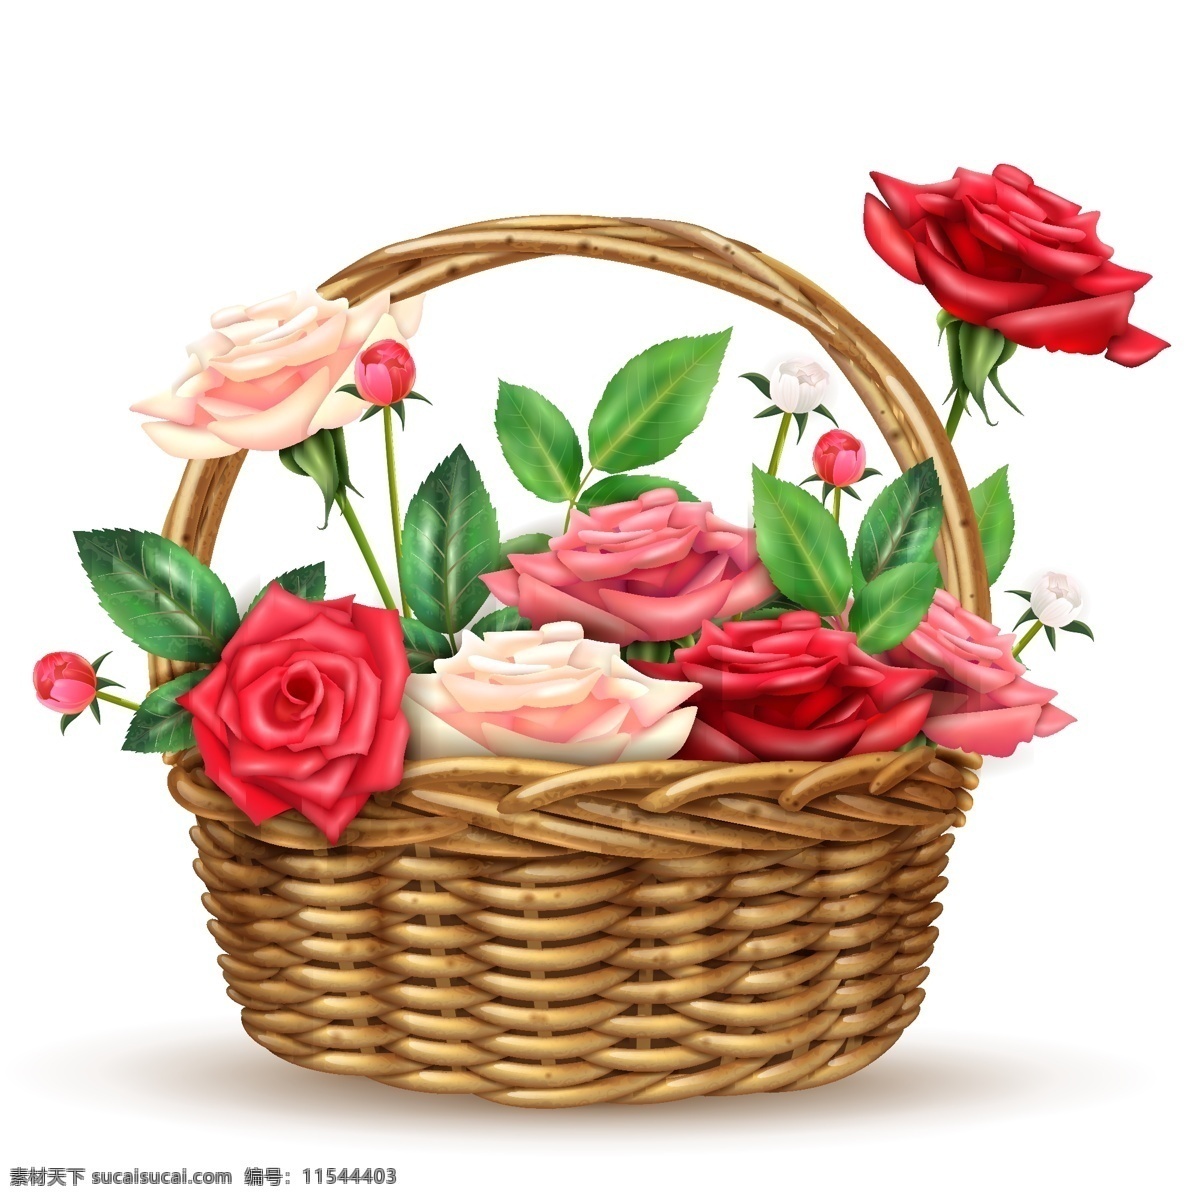 花篮 玫瑰 月季 花卉 鲜花 篮子 罗期花 玫瑰花 花朵 绿叶 设计素材 背景图片 海报 封面 手绘 手绘玫瑰 花 植物 生物世界 花草